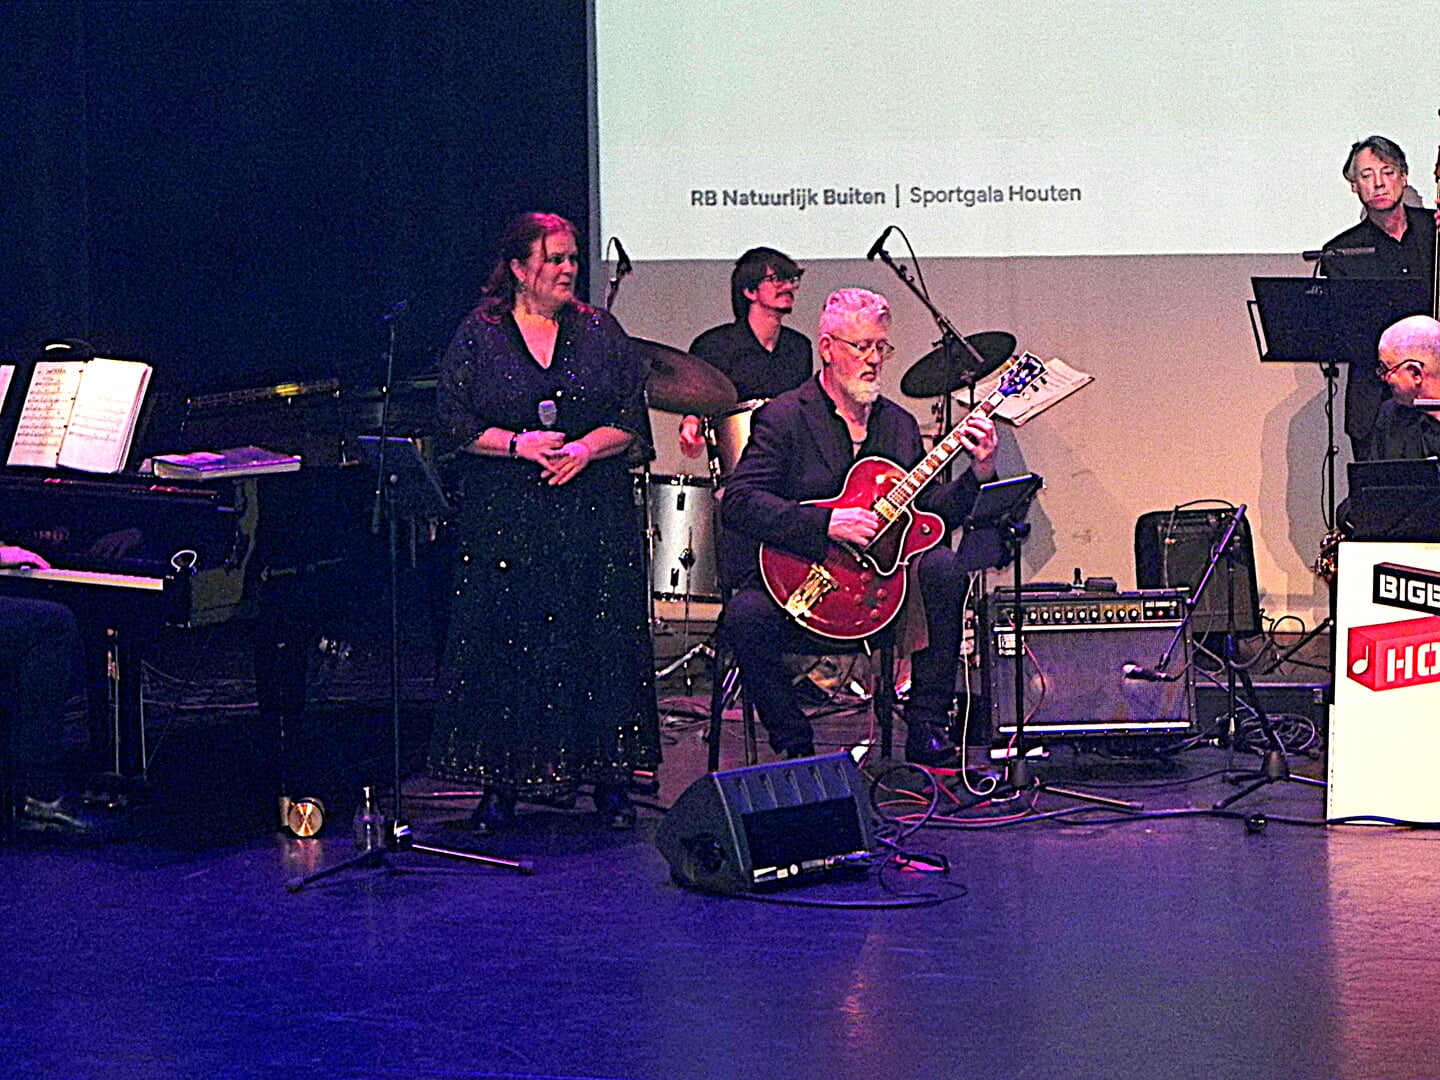 De Bigband Houten met zangeres Yvonne Couprie-Noordijk speelden de sterren van de hemel.